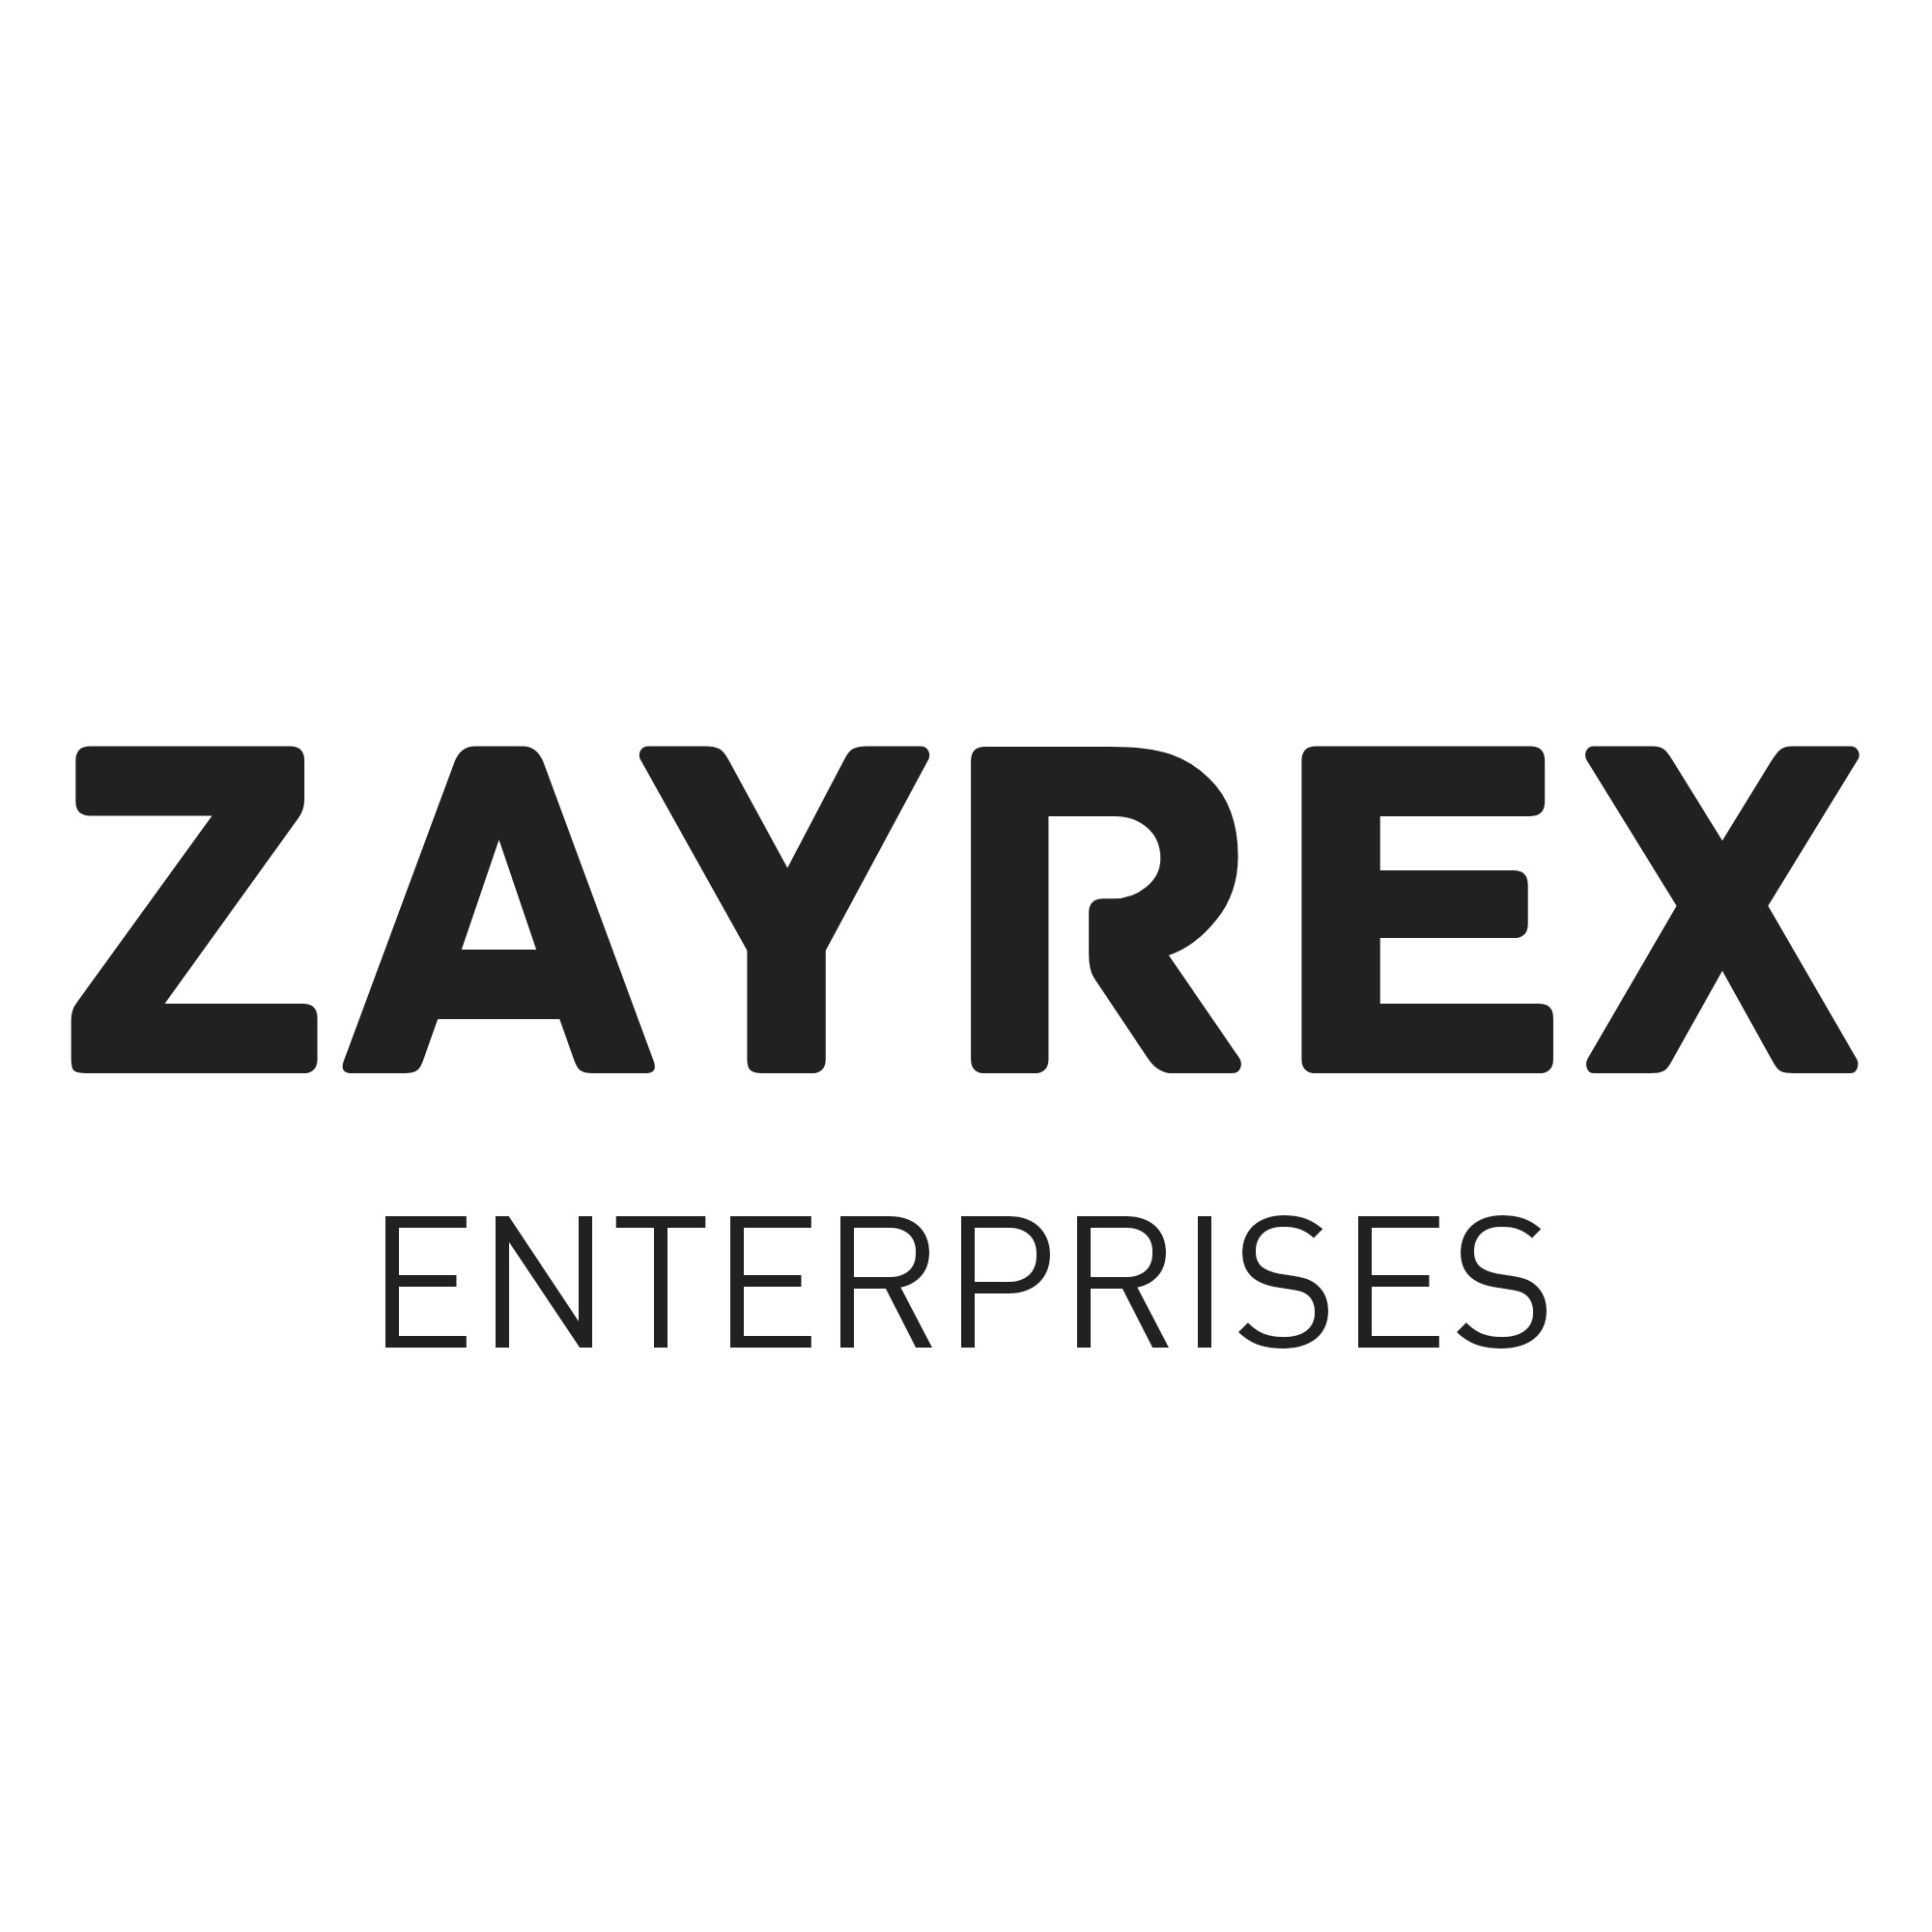 Zayrex Enterprises